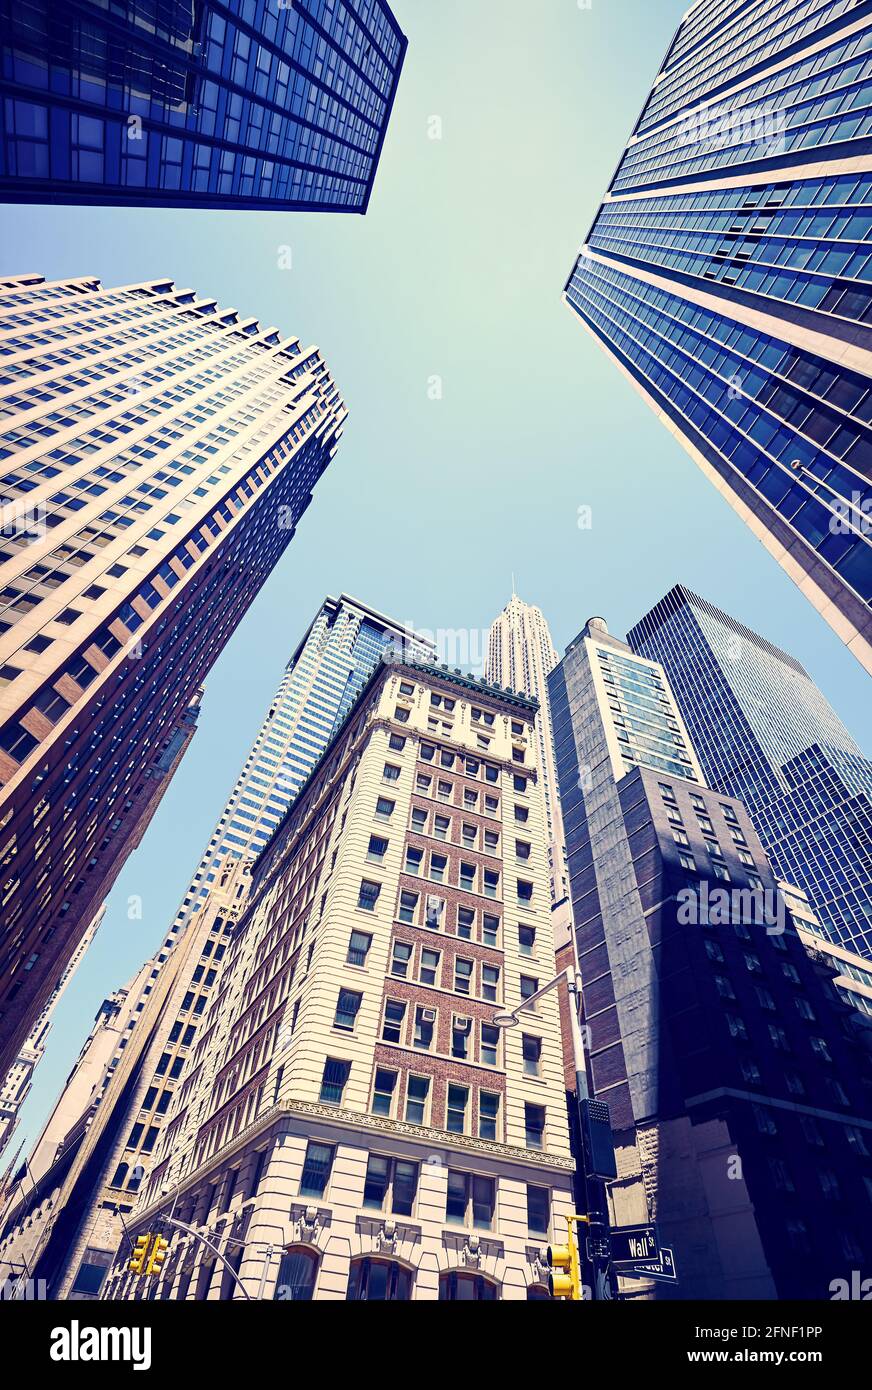 L'été dans la ville, en regardant les gratte-ciels de New York à Wall Street, couleur image, Etats-Unis. Banque D'Images